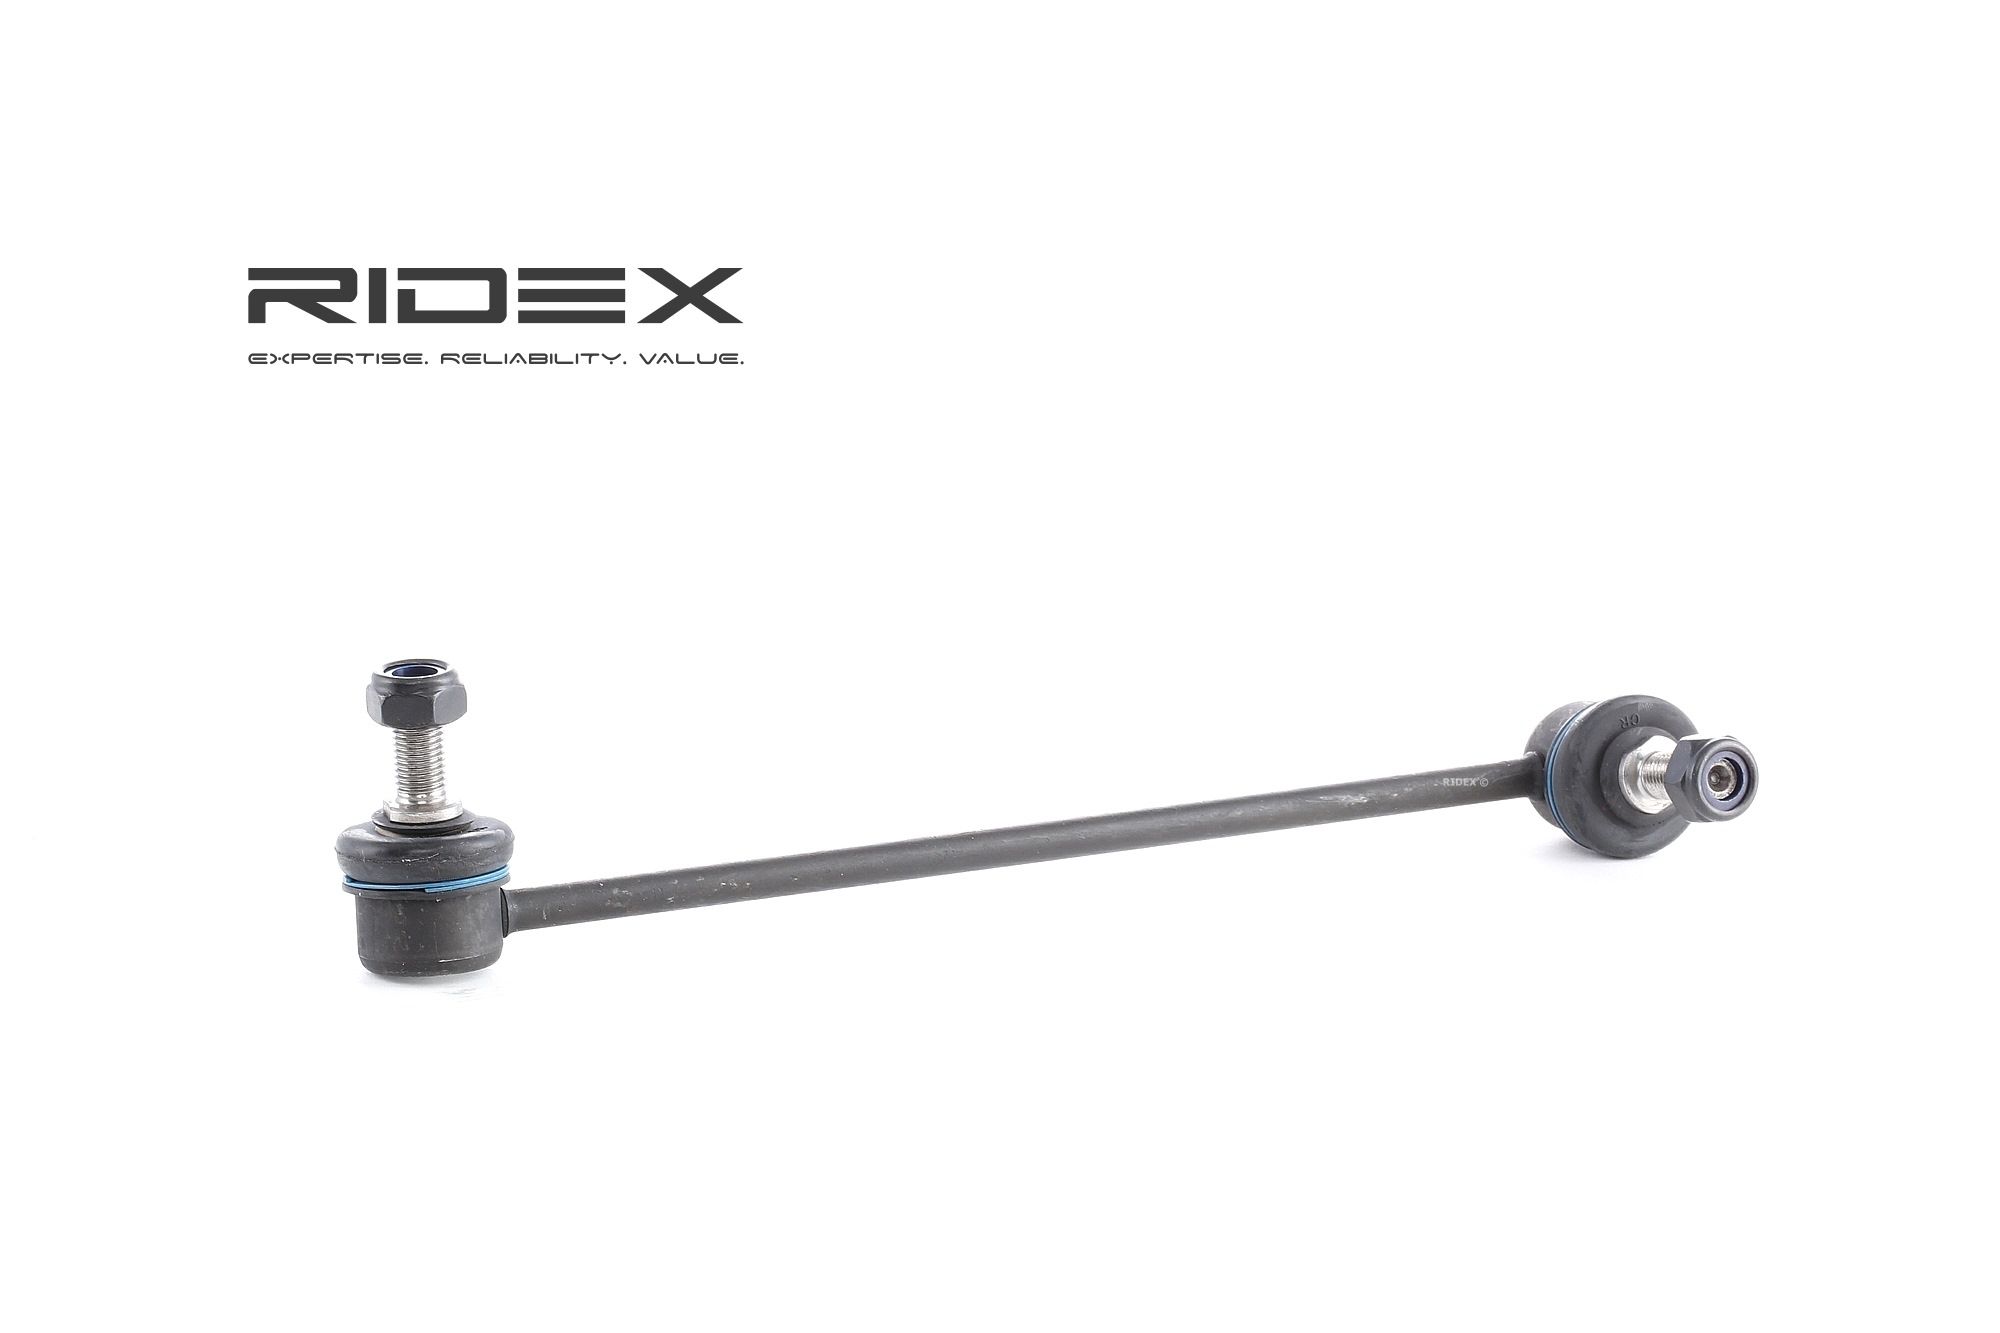 RIDEX 3229S0167 originali MERCEDES-BENZ VITO 2023 Tiranti barra stabilizzatrice Assale anteriore Dx, 250mm, M10x1,5, con presa a chiave